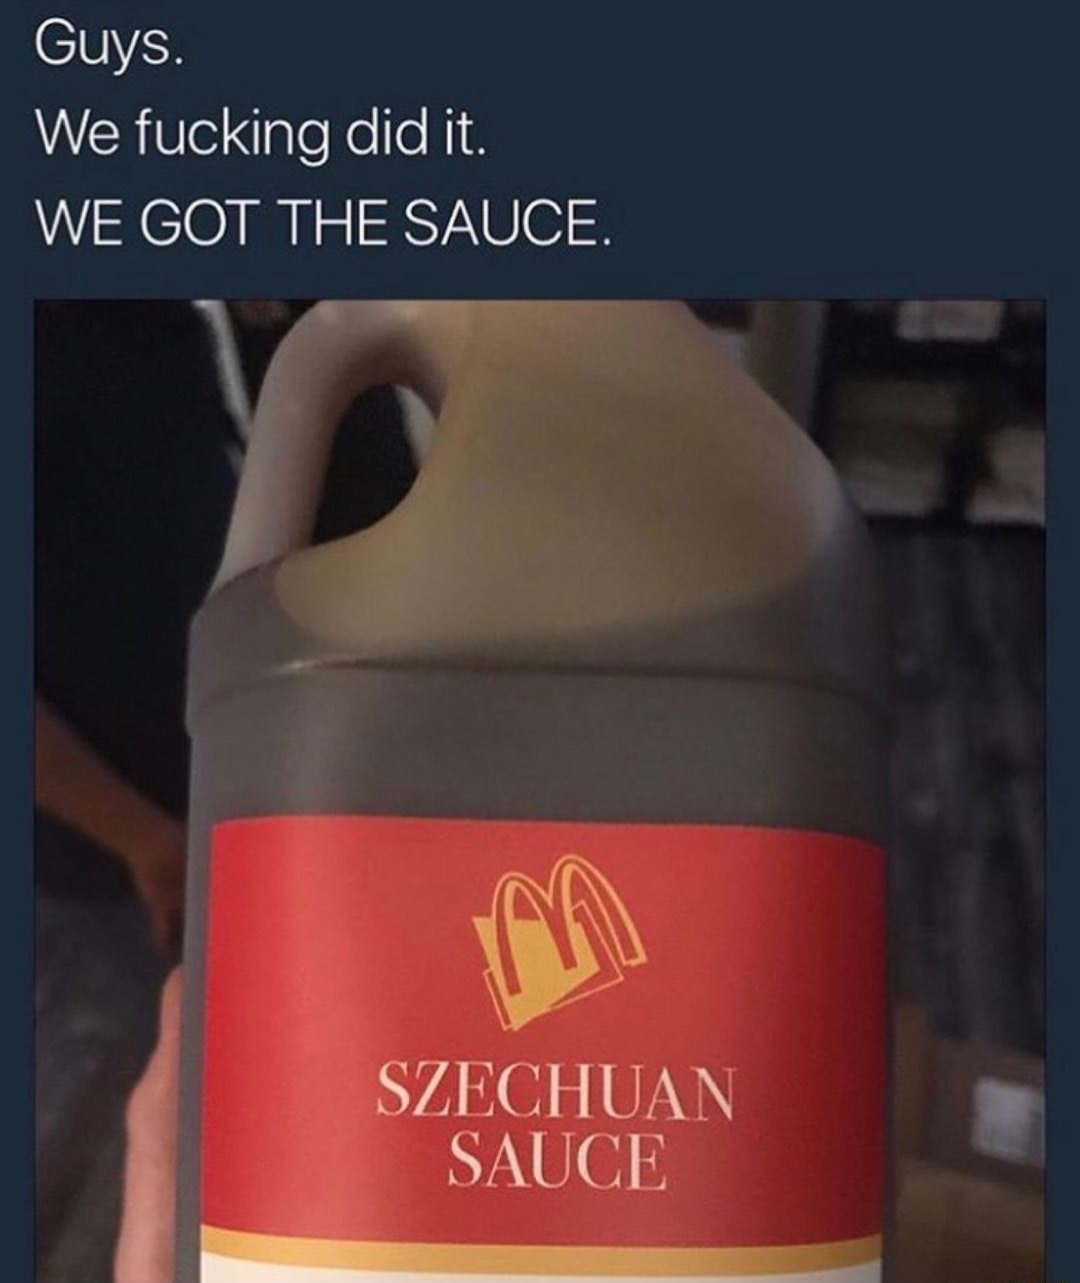 rick and morty szechuan sauce - Guys. We fucking did it. We Got The Sauce. Szechuan Sauce